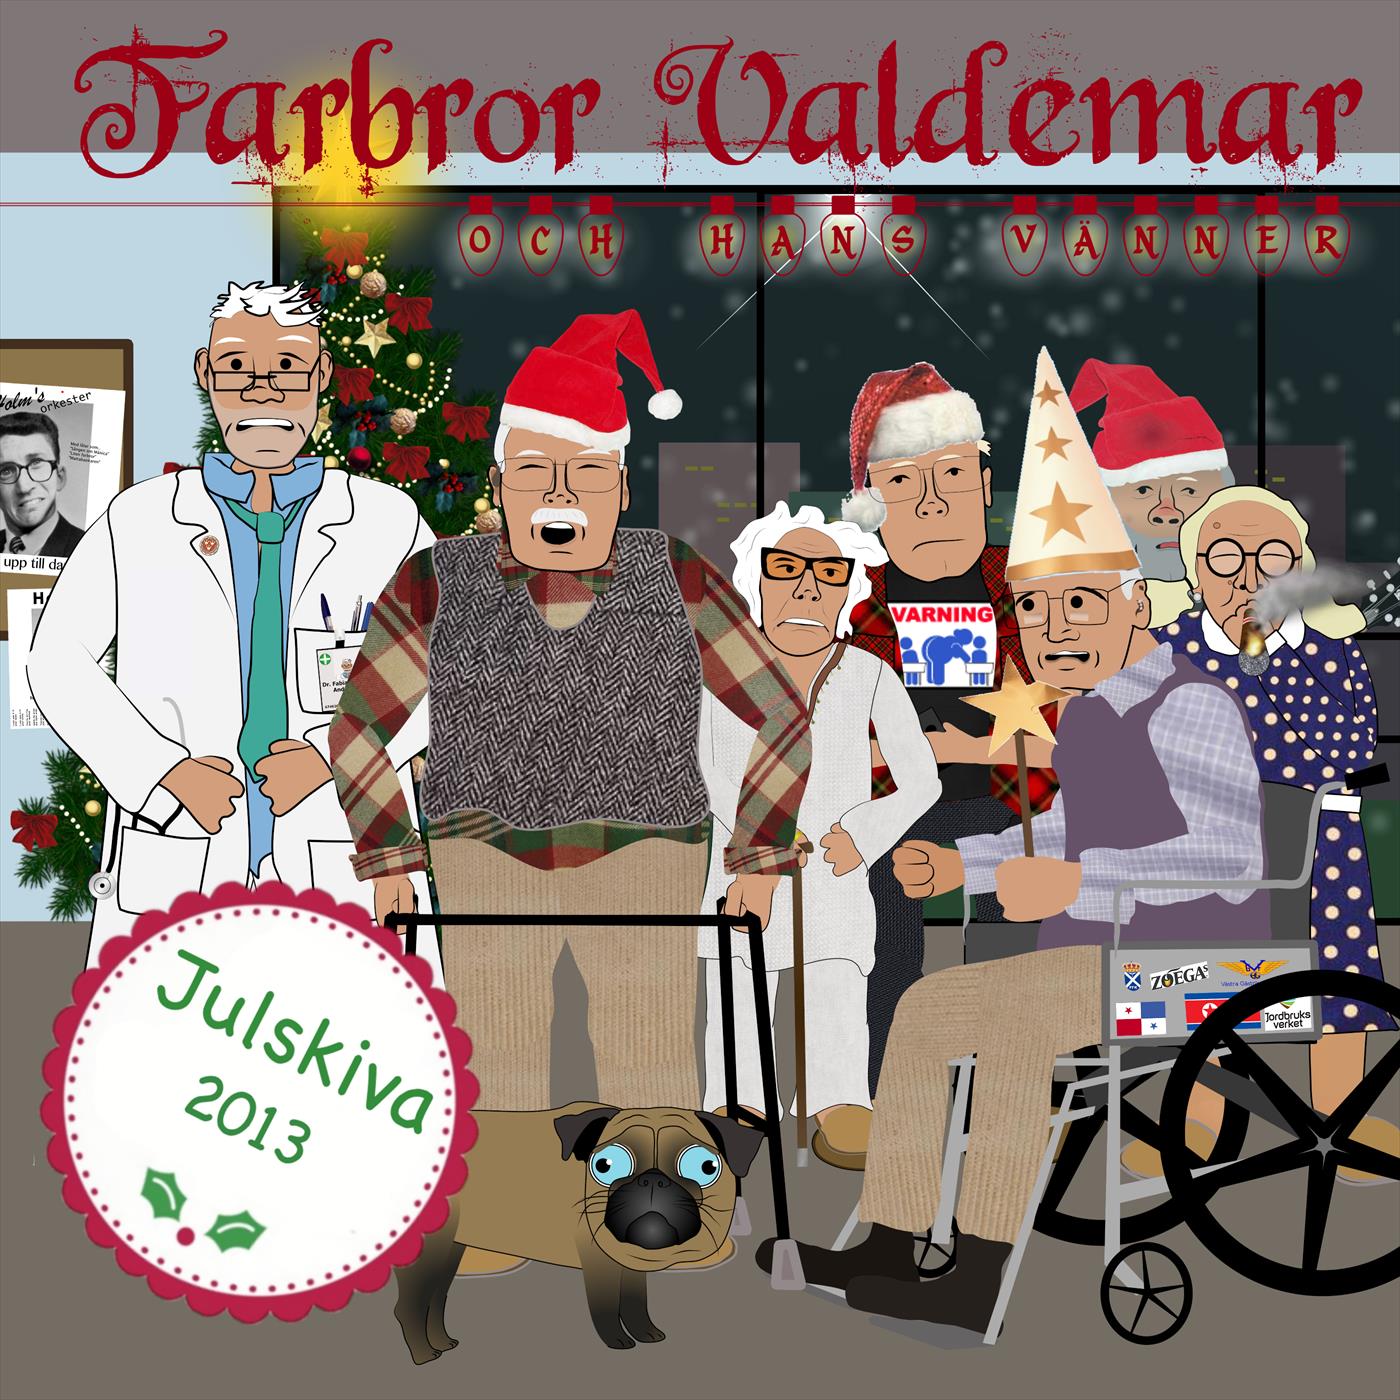 Farbror Valdemar och hans vänner - Julskiva 2013